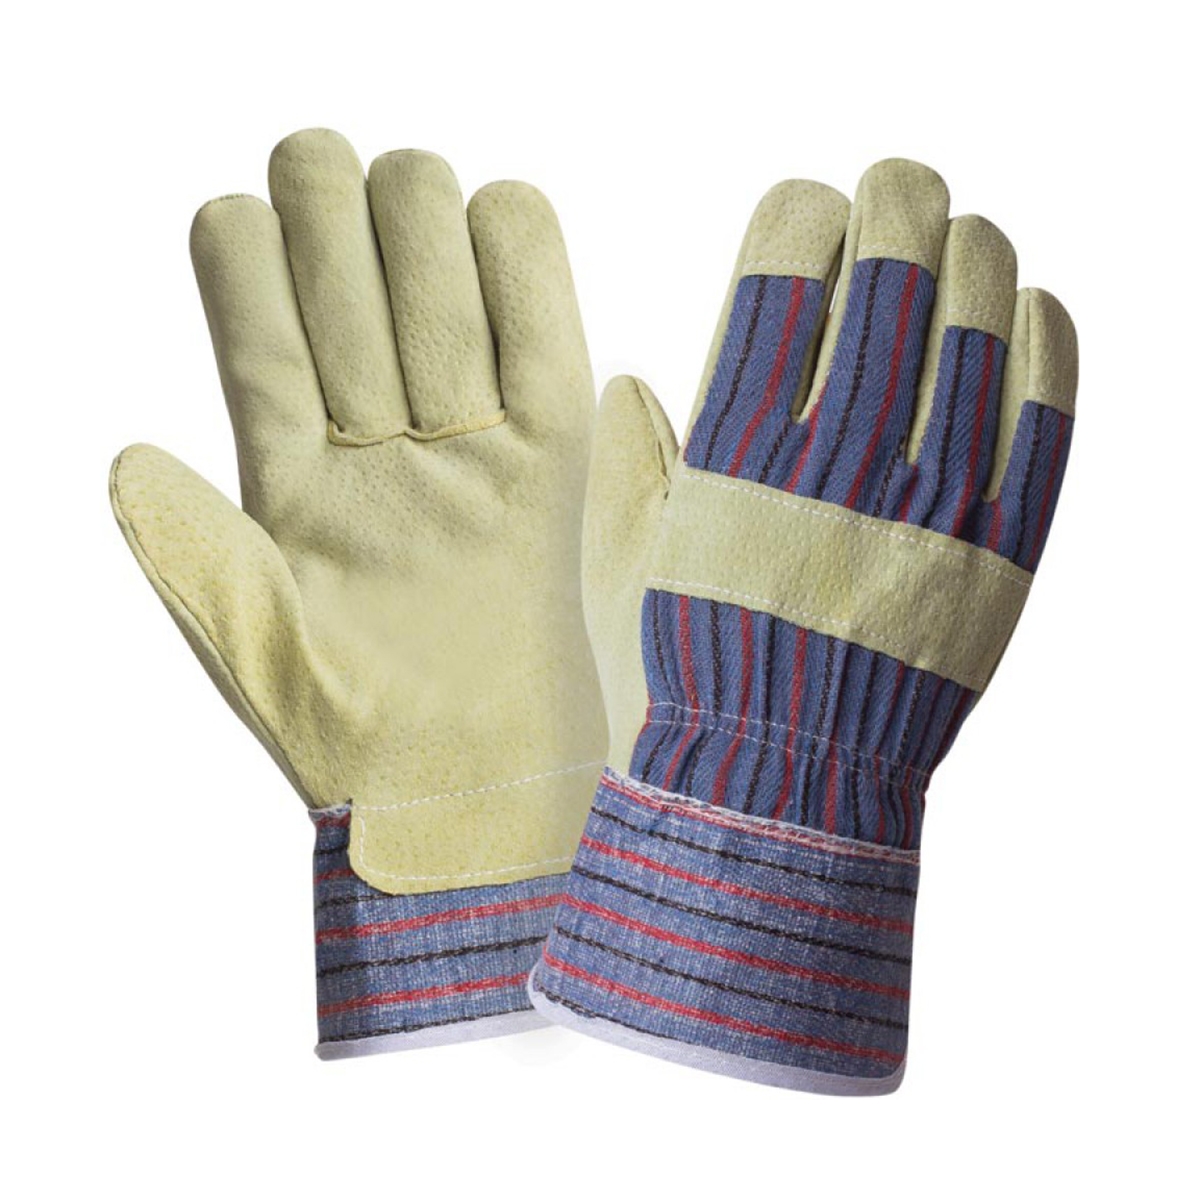 Перчатки спилковые комбинированные ПТК ЛЕОН 25761, размер 9, 1 пара комбинированные спилковые перчатки mos